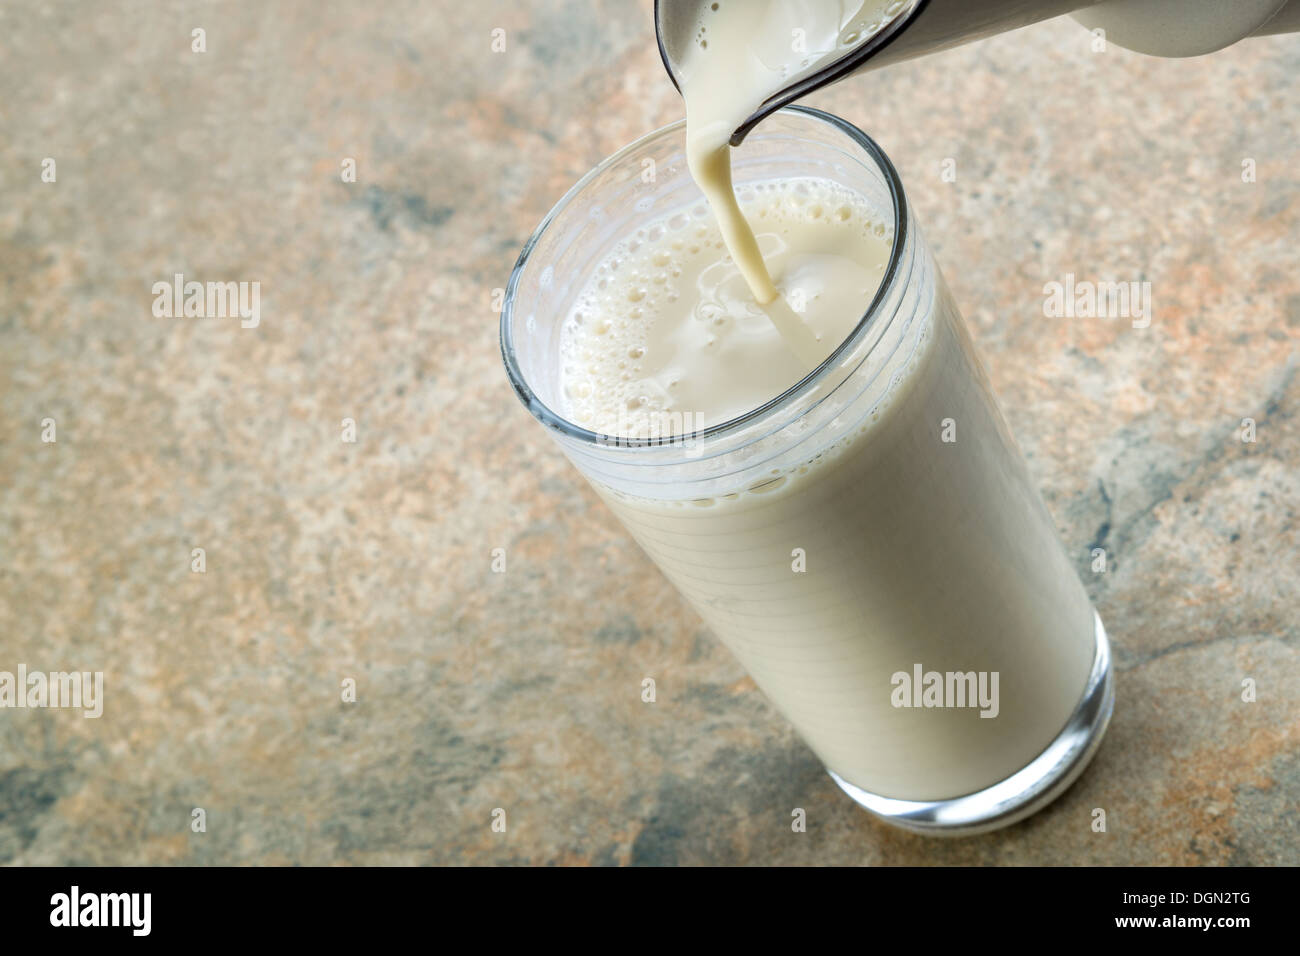 Photo horizontale de verser le lait d'amande dans du verre avec comptoir en pierre en arrière-plan Banque D'Images